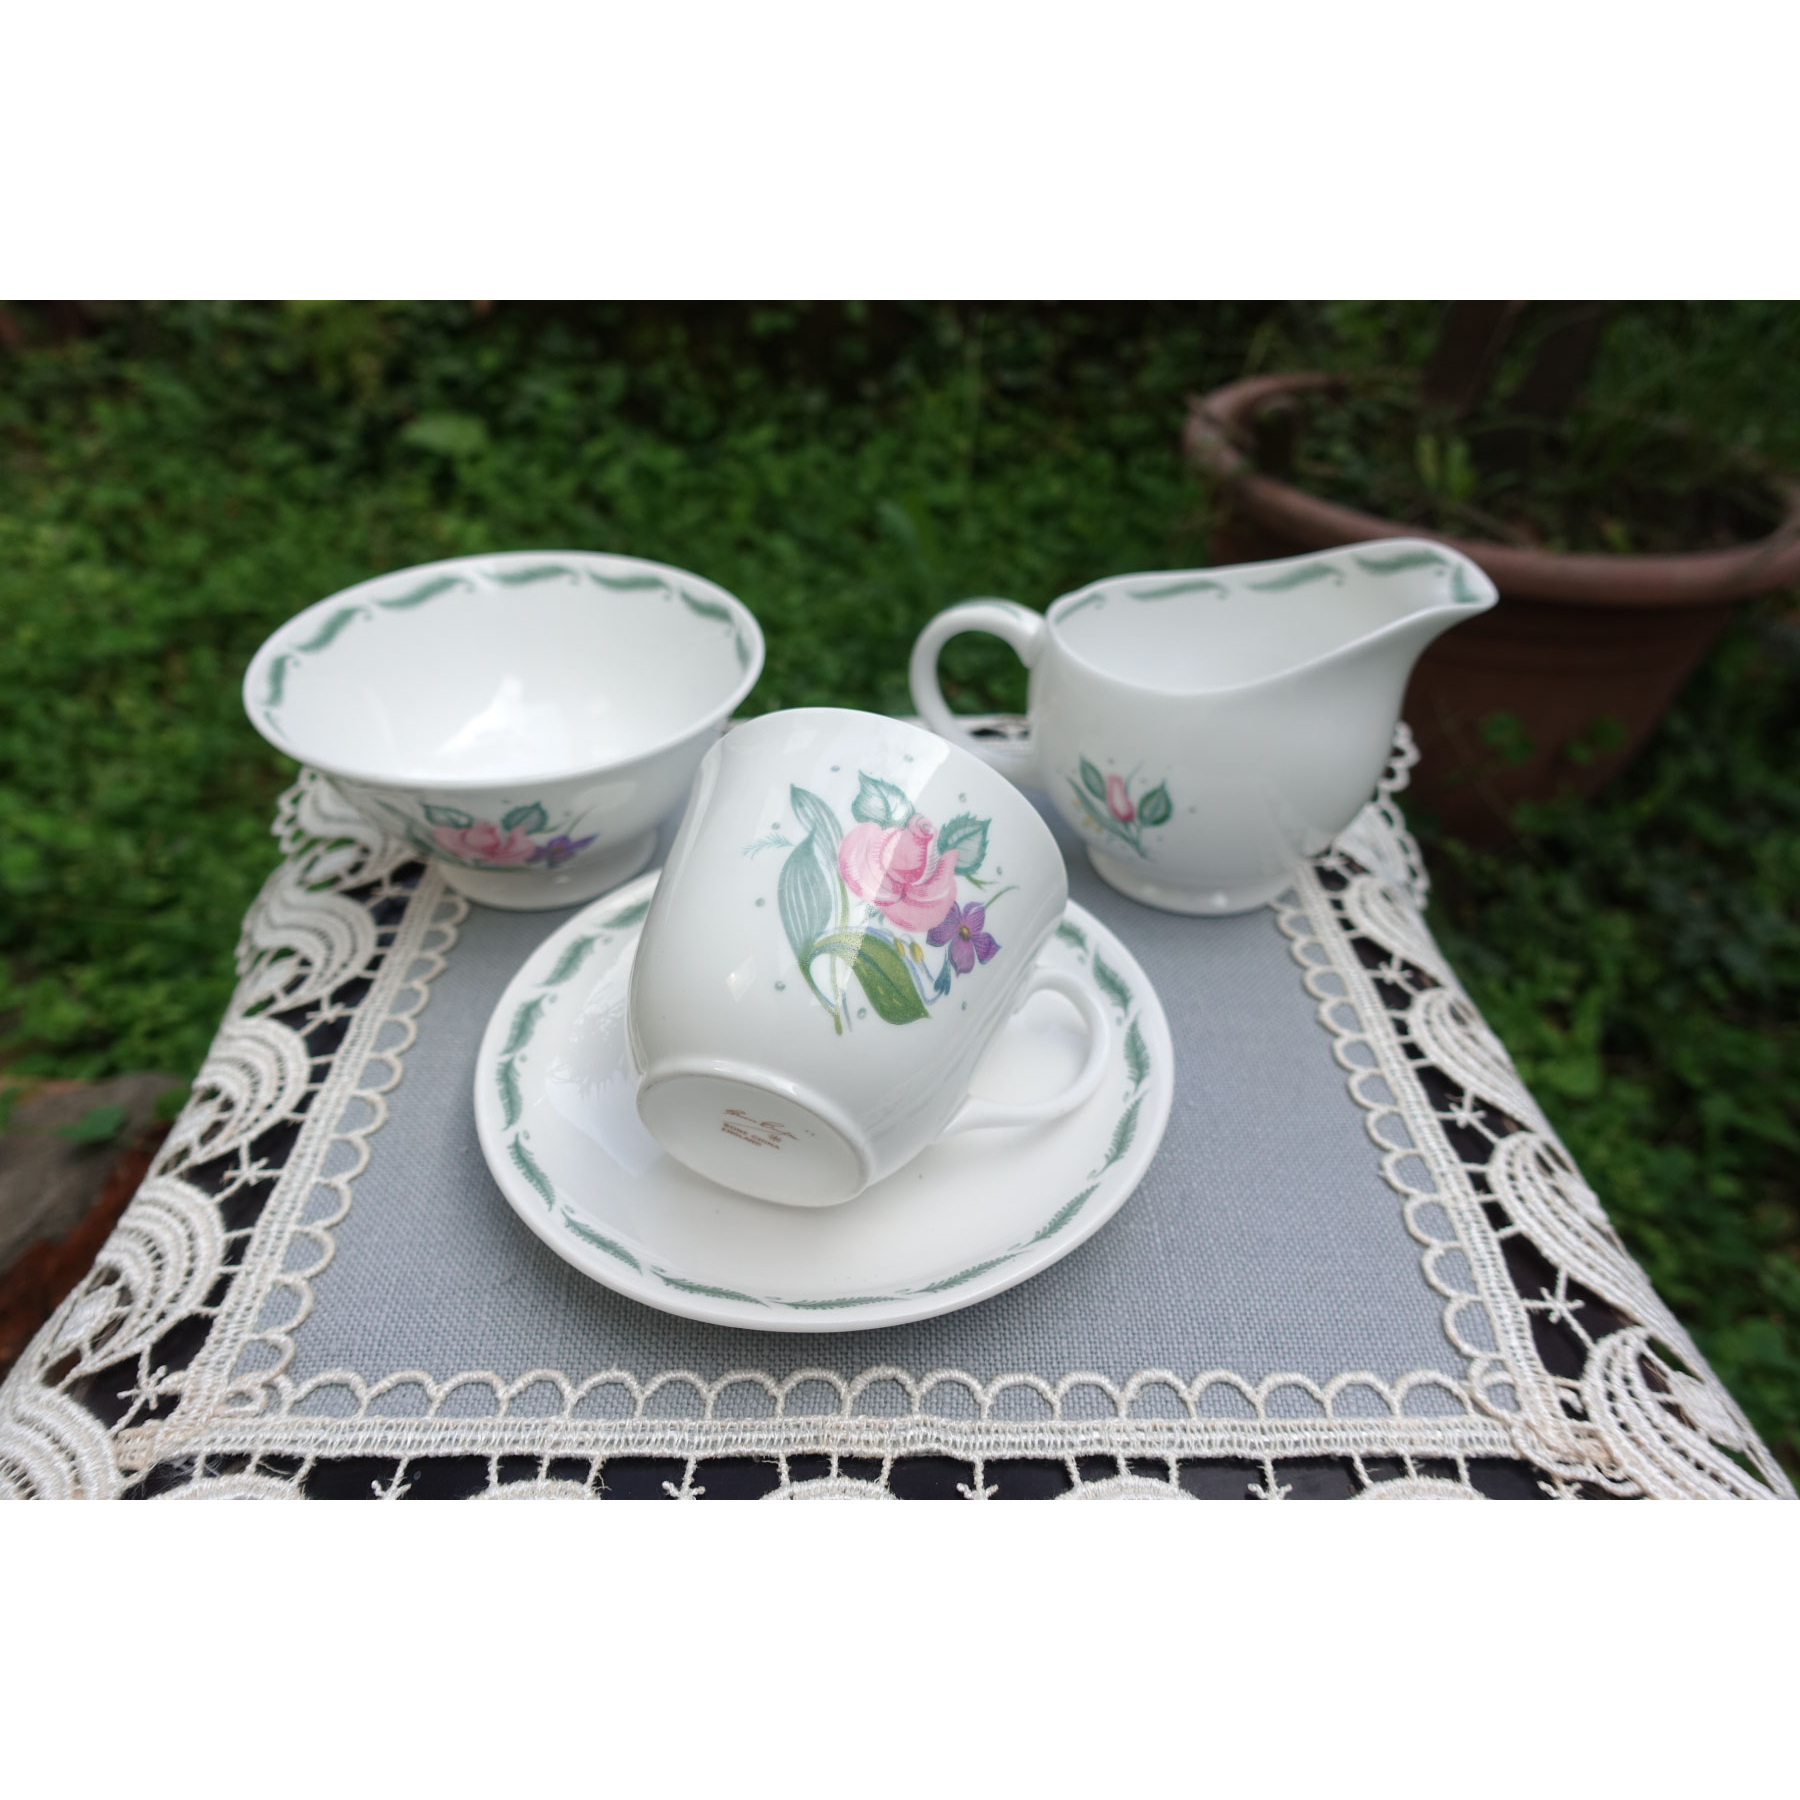 【Sunshine Antiques】Susie Cooper - Fragance 英國骨瓷 杯組 茶杯 糖碗 牛奶壺